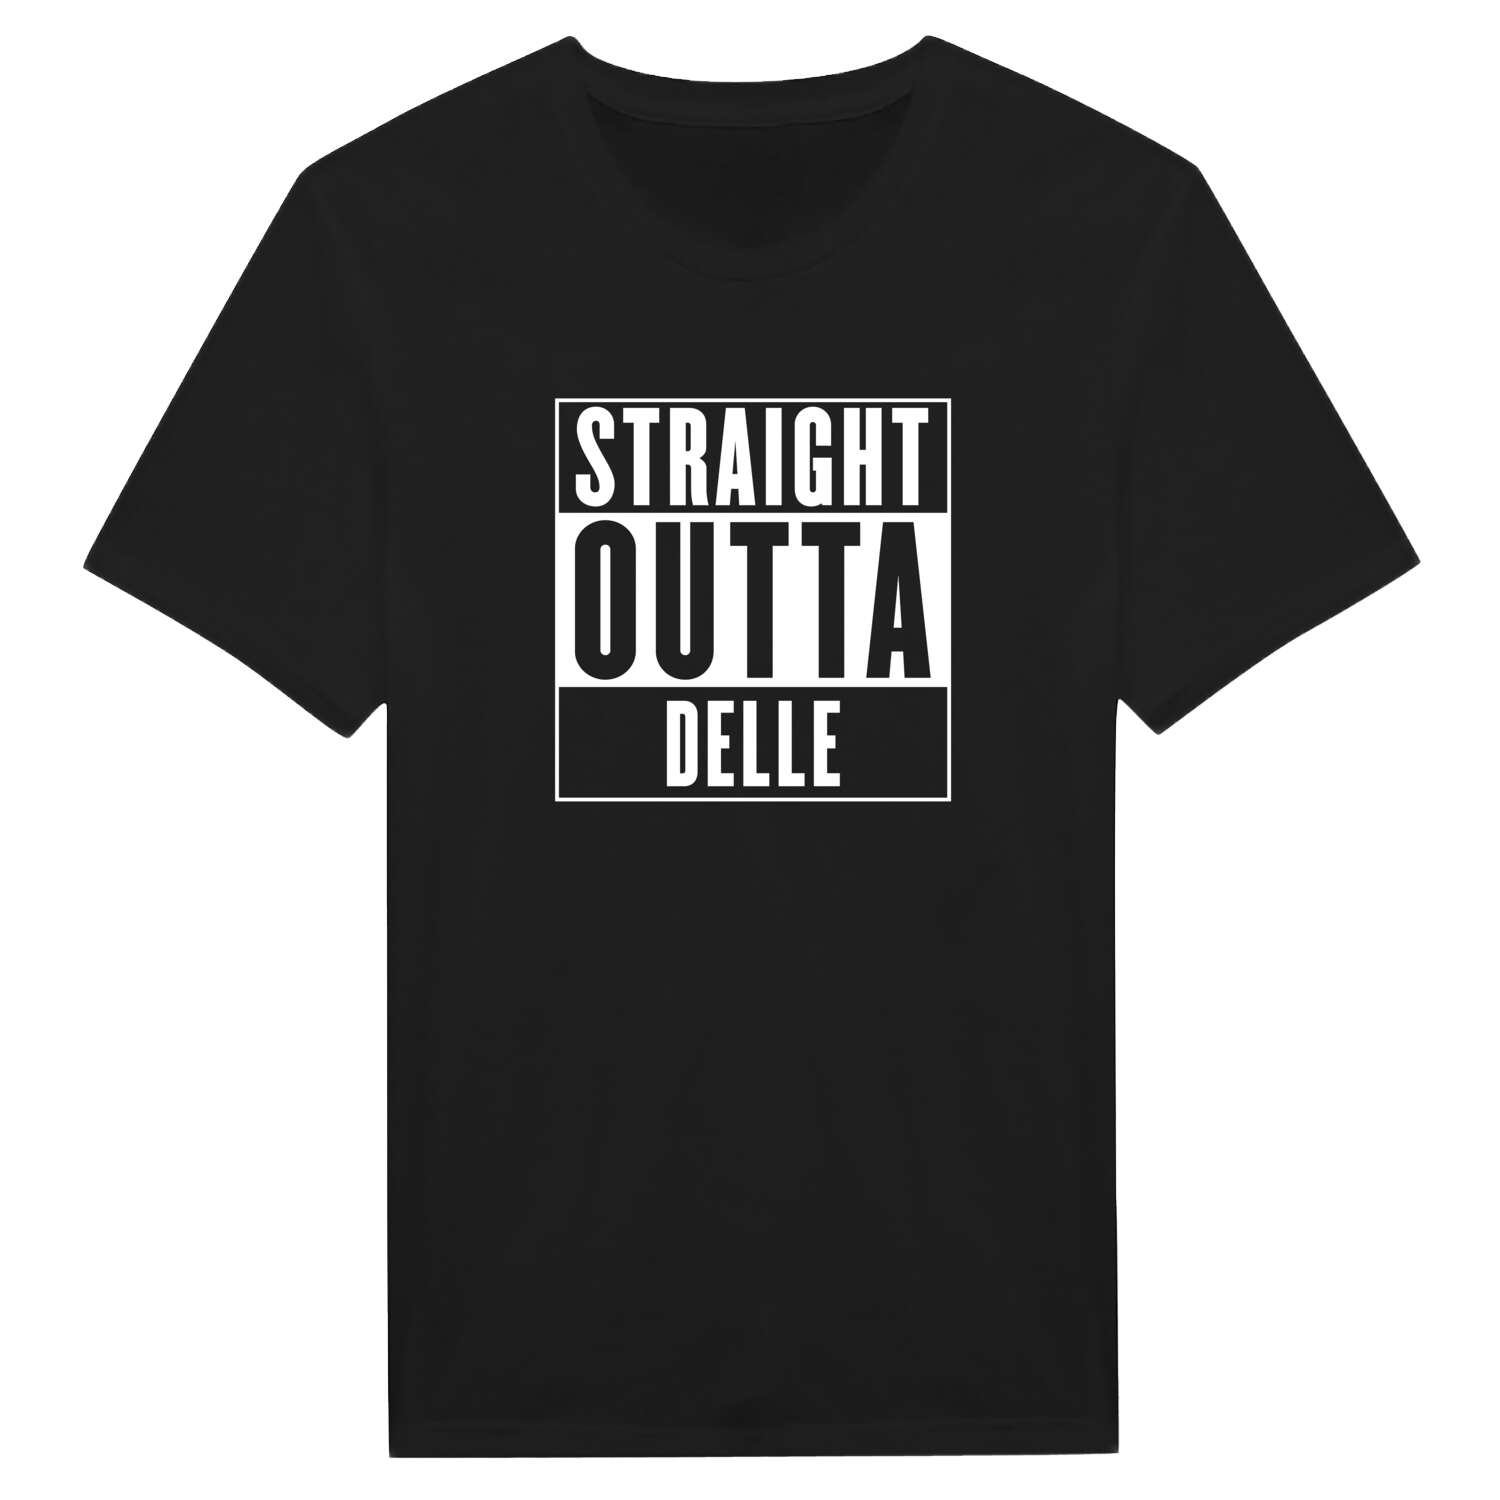 Delle T-Shirt »Straight Outta«